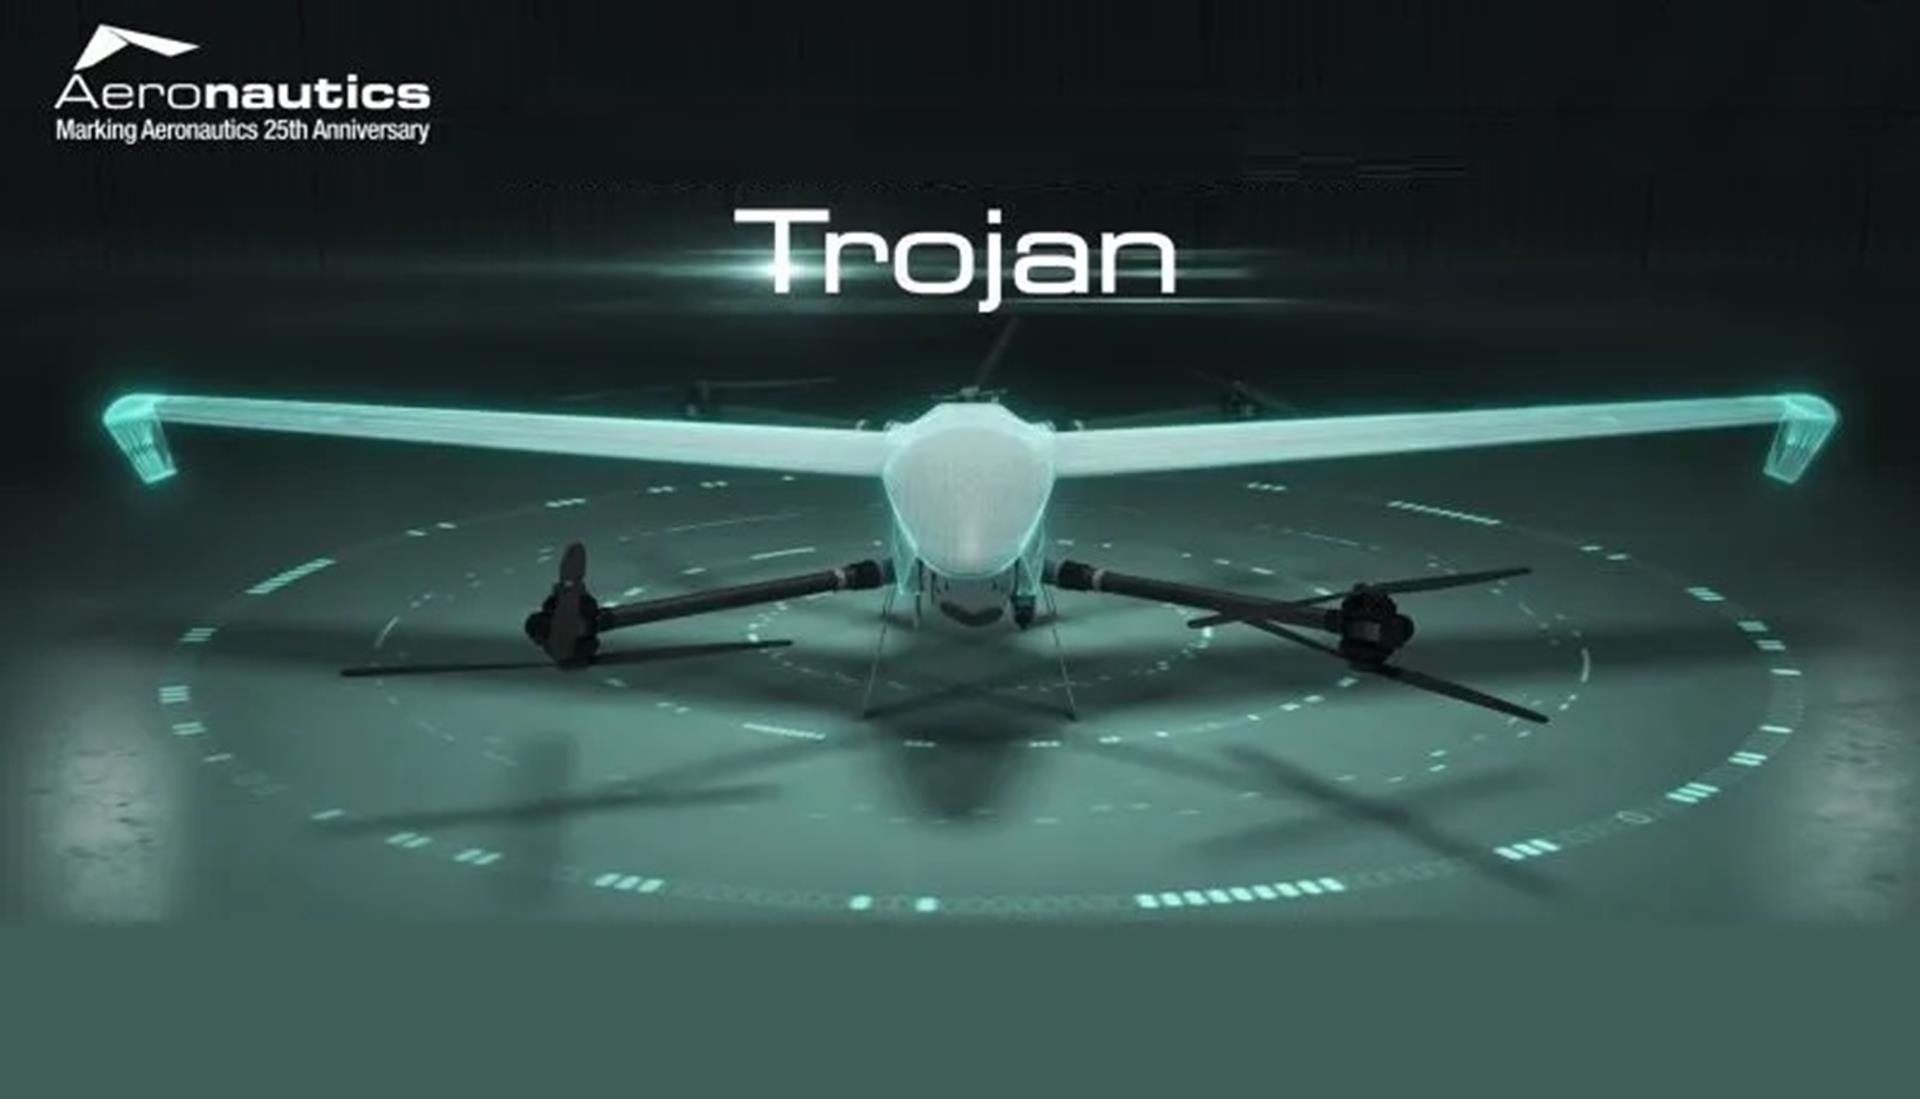 Aeronautics pokazało hybrydowego Trojan klasy UHP, rewolucyjny dron wojskowy, Trojan klasy UHP, dron Trojan klasy UHP, dron Trojan